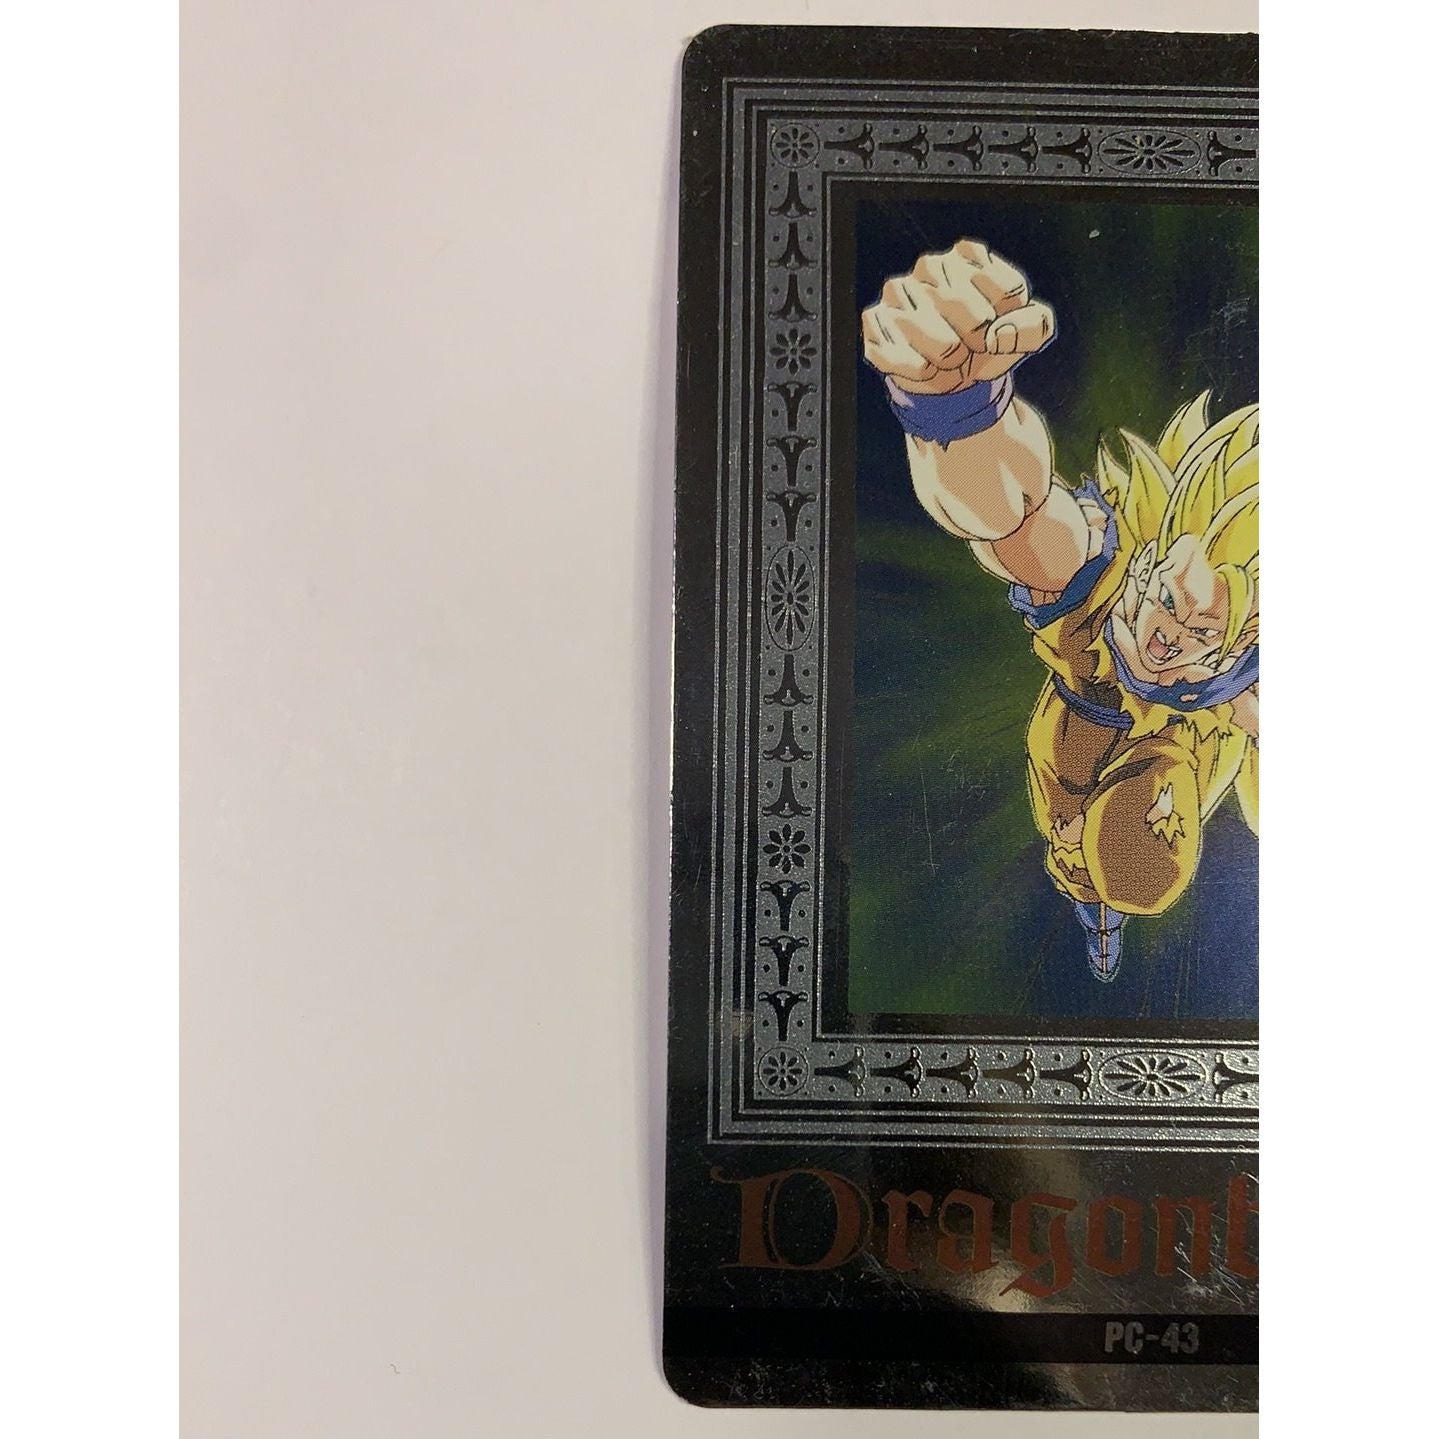  1995 Carte Platina Hero Collection Dragon Ball Z Silver Foil Holo Super Saiyan Goku  Local Legends Cards & Collectibles